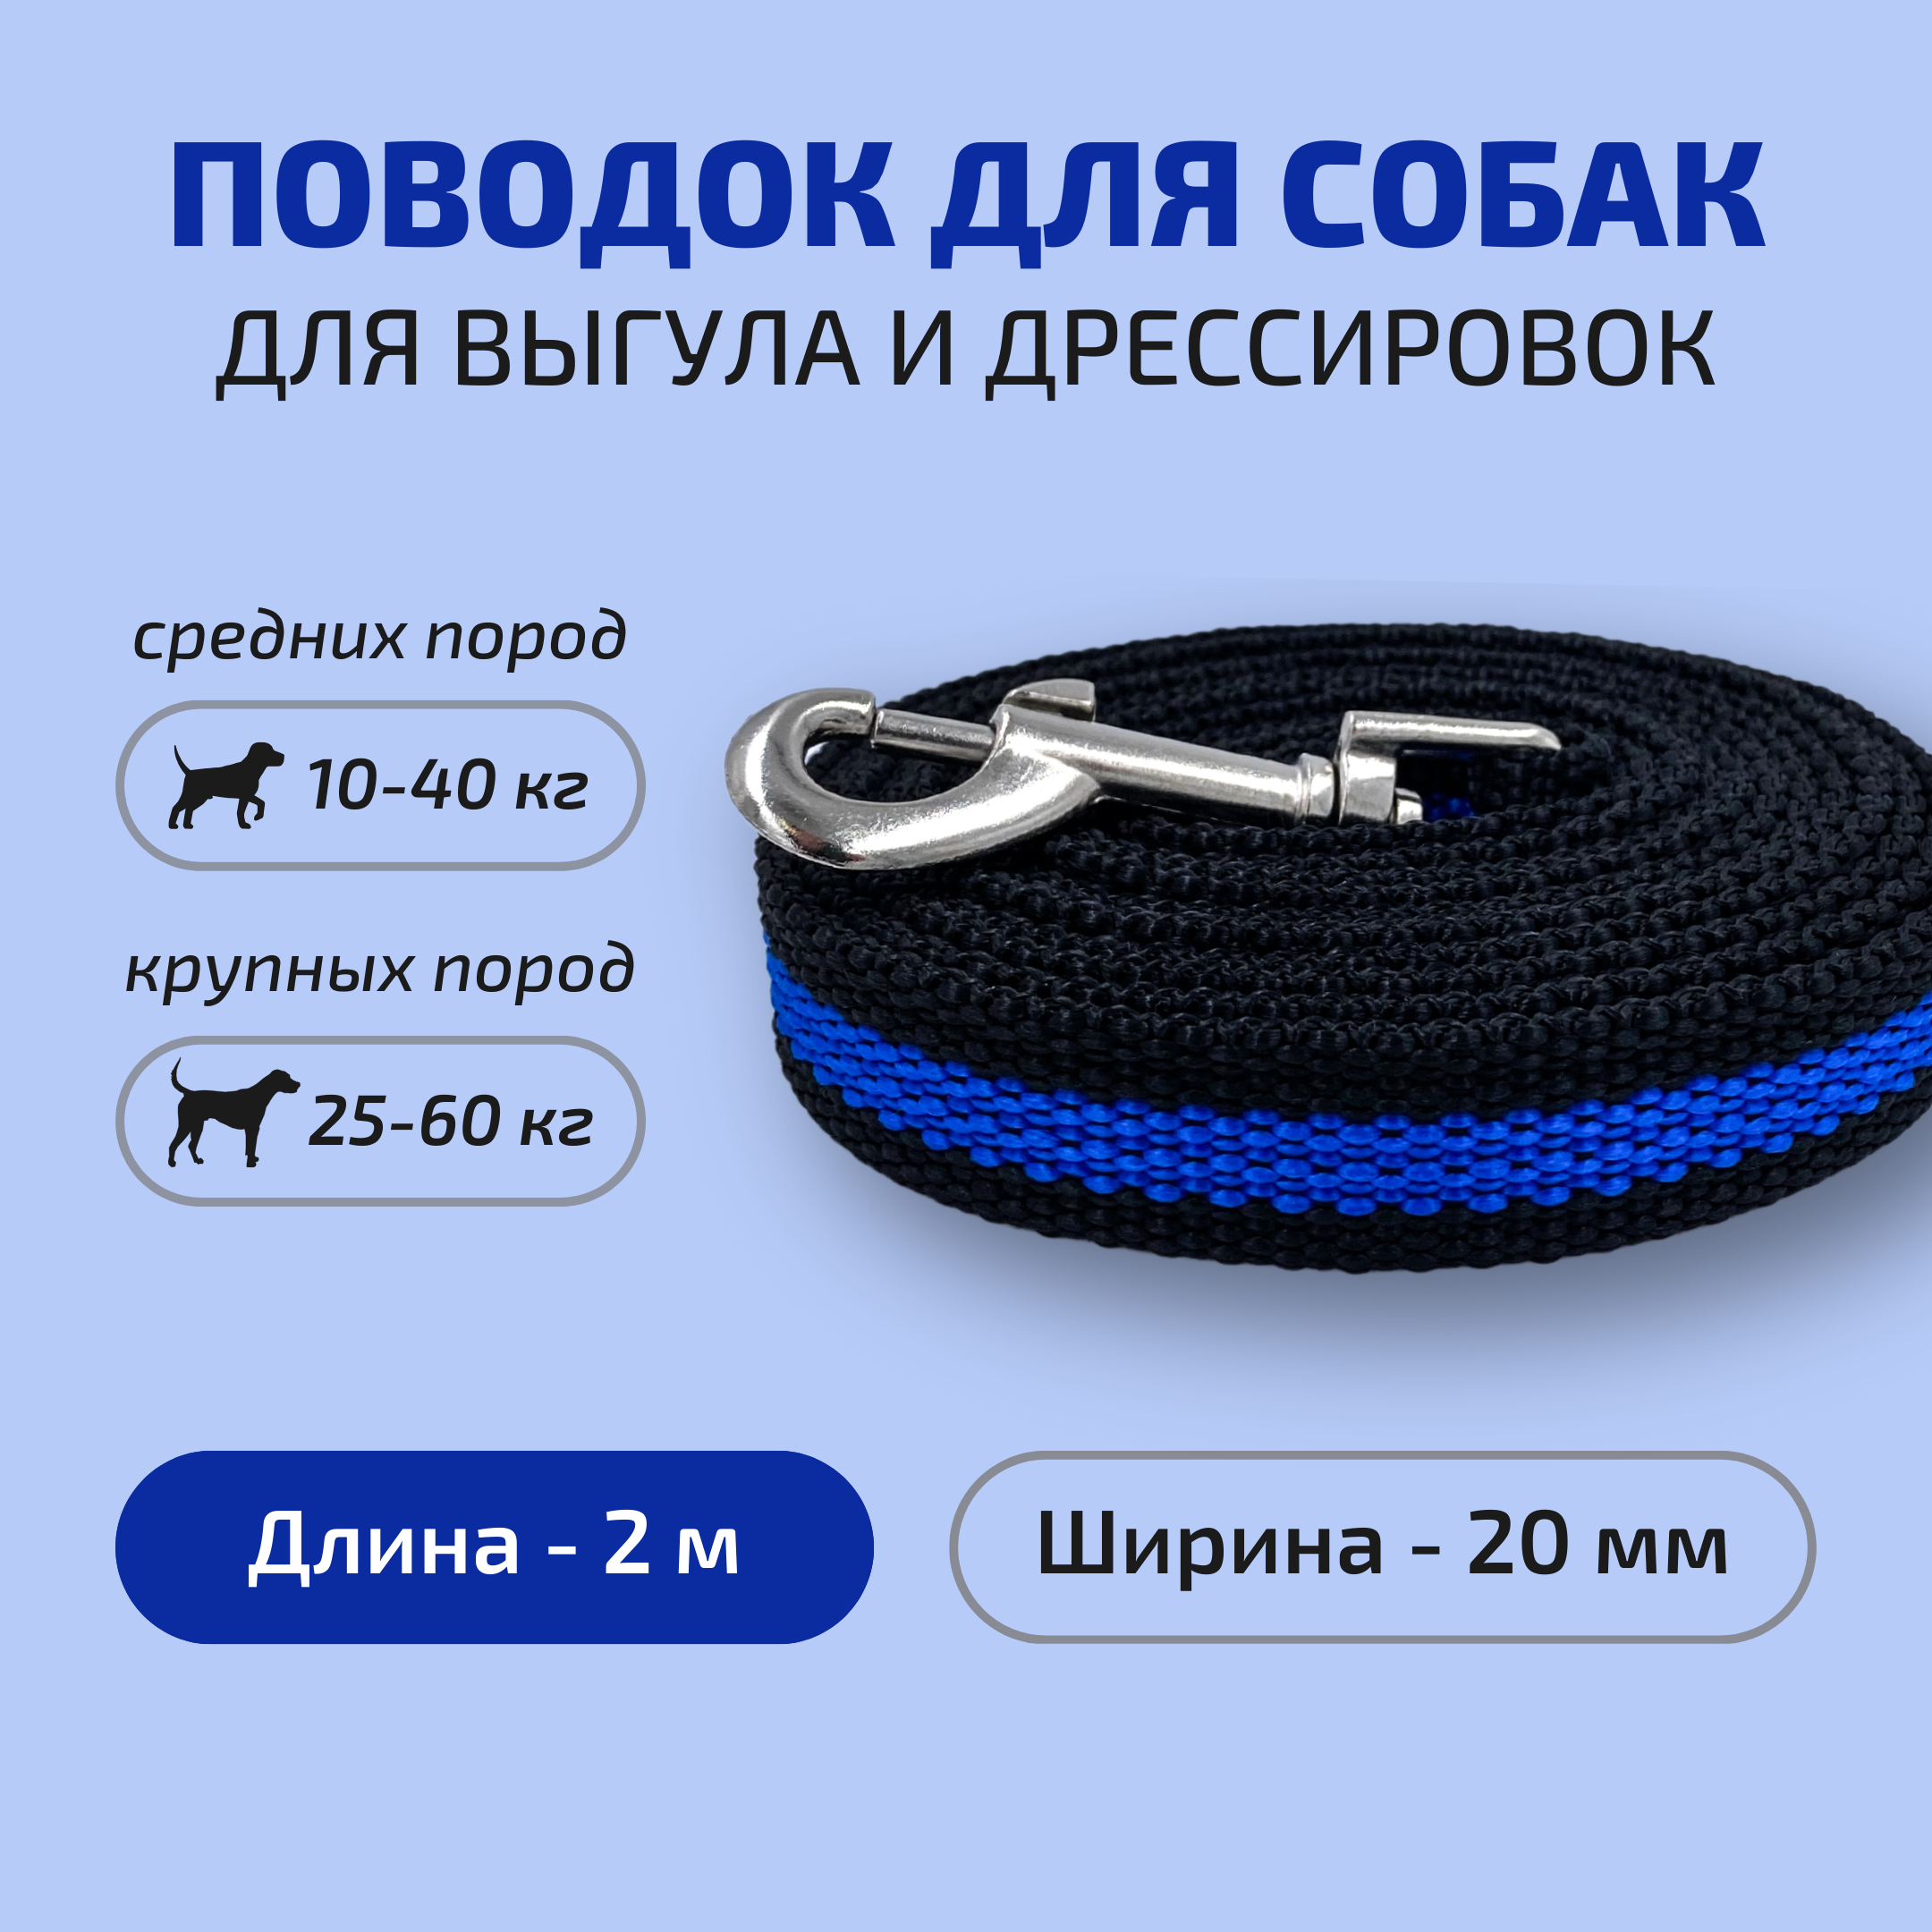 Поводок для собак Povodki Shop, черно-синий, ширина 20 мм, длина 2 м